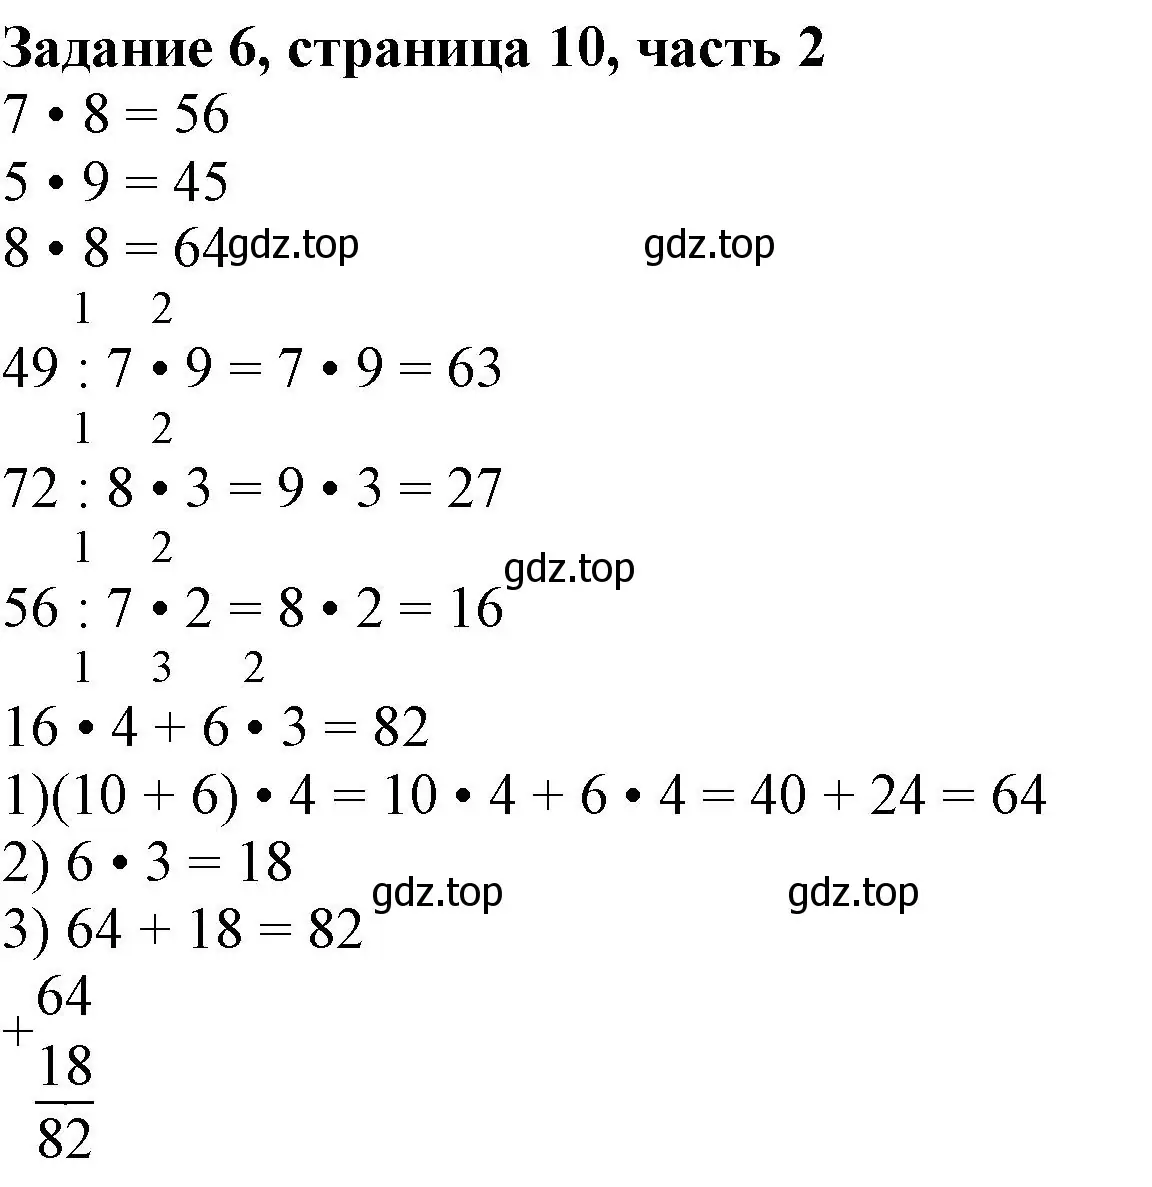 Решение номер 6 (страница 10) гдз по математике 3 класс Моро, Бантова, учебник 2 часть